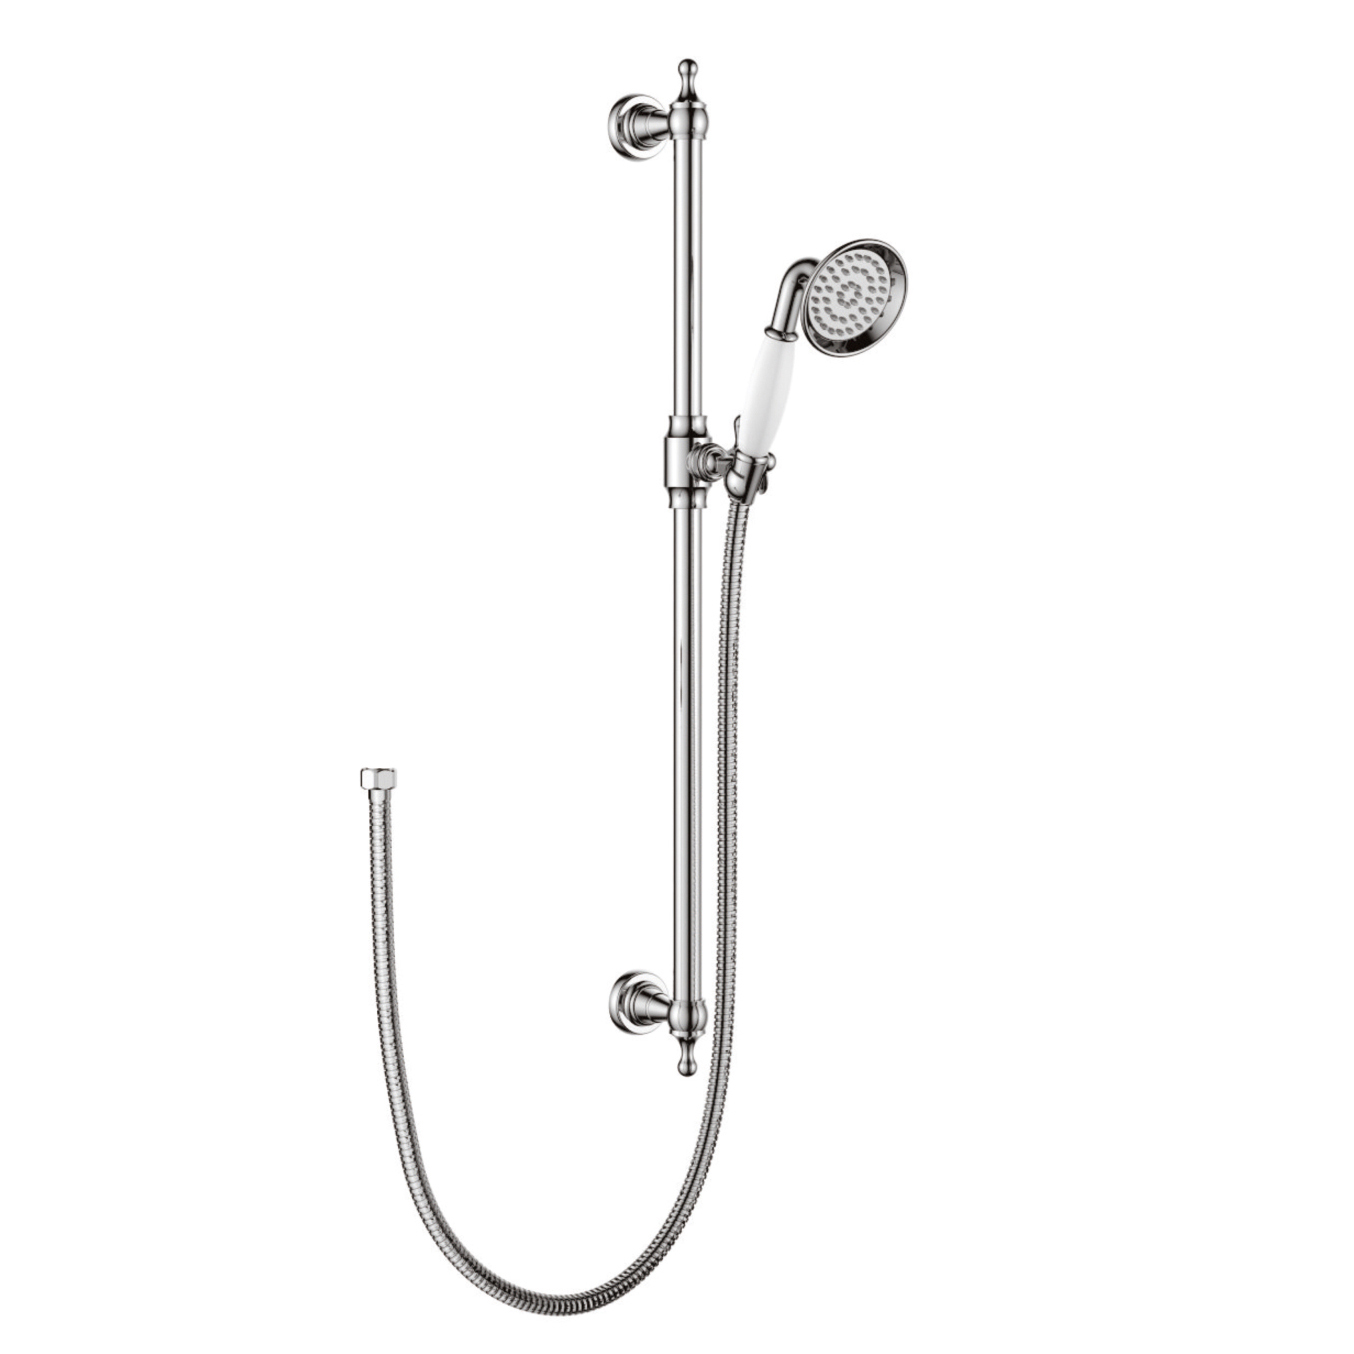 1F1218-SR1G Single Function Hand Shower On brass Classical Sliding Rail For Bathroom